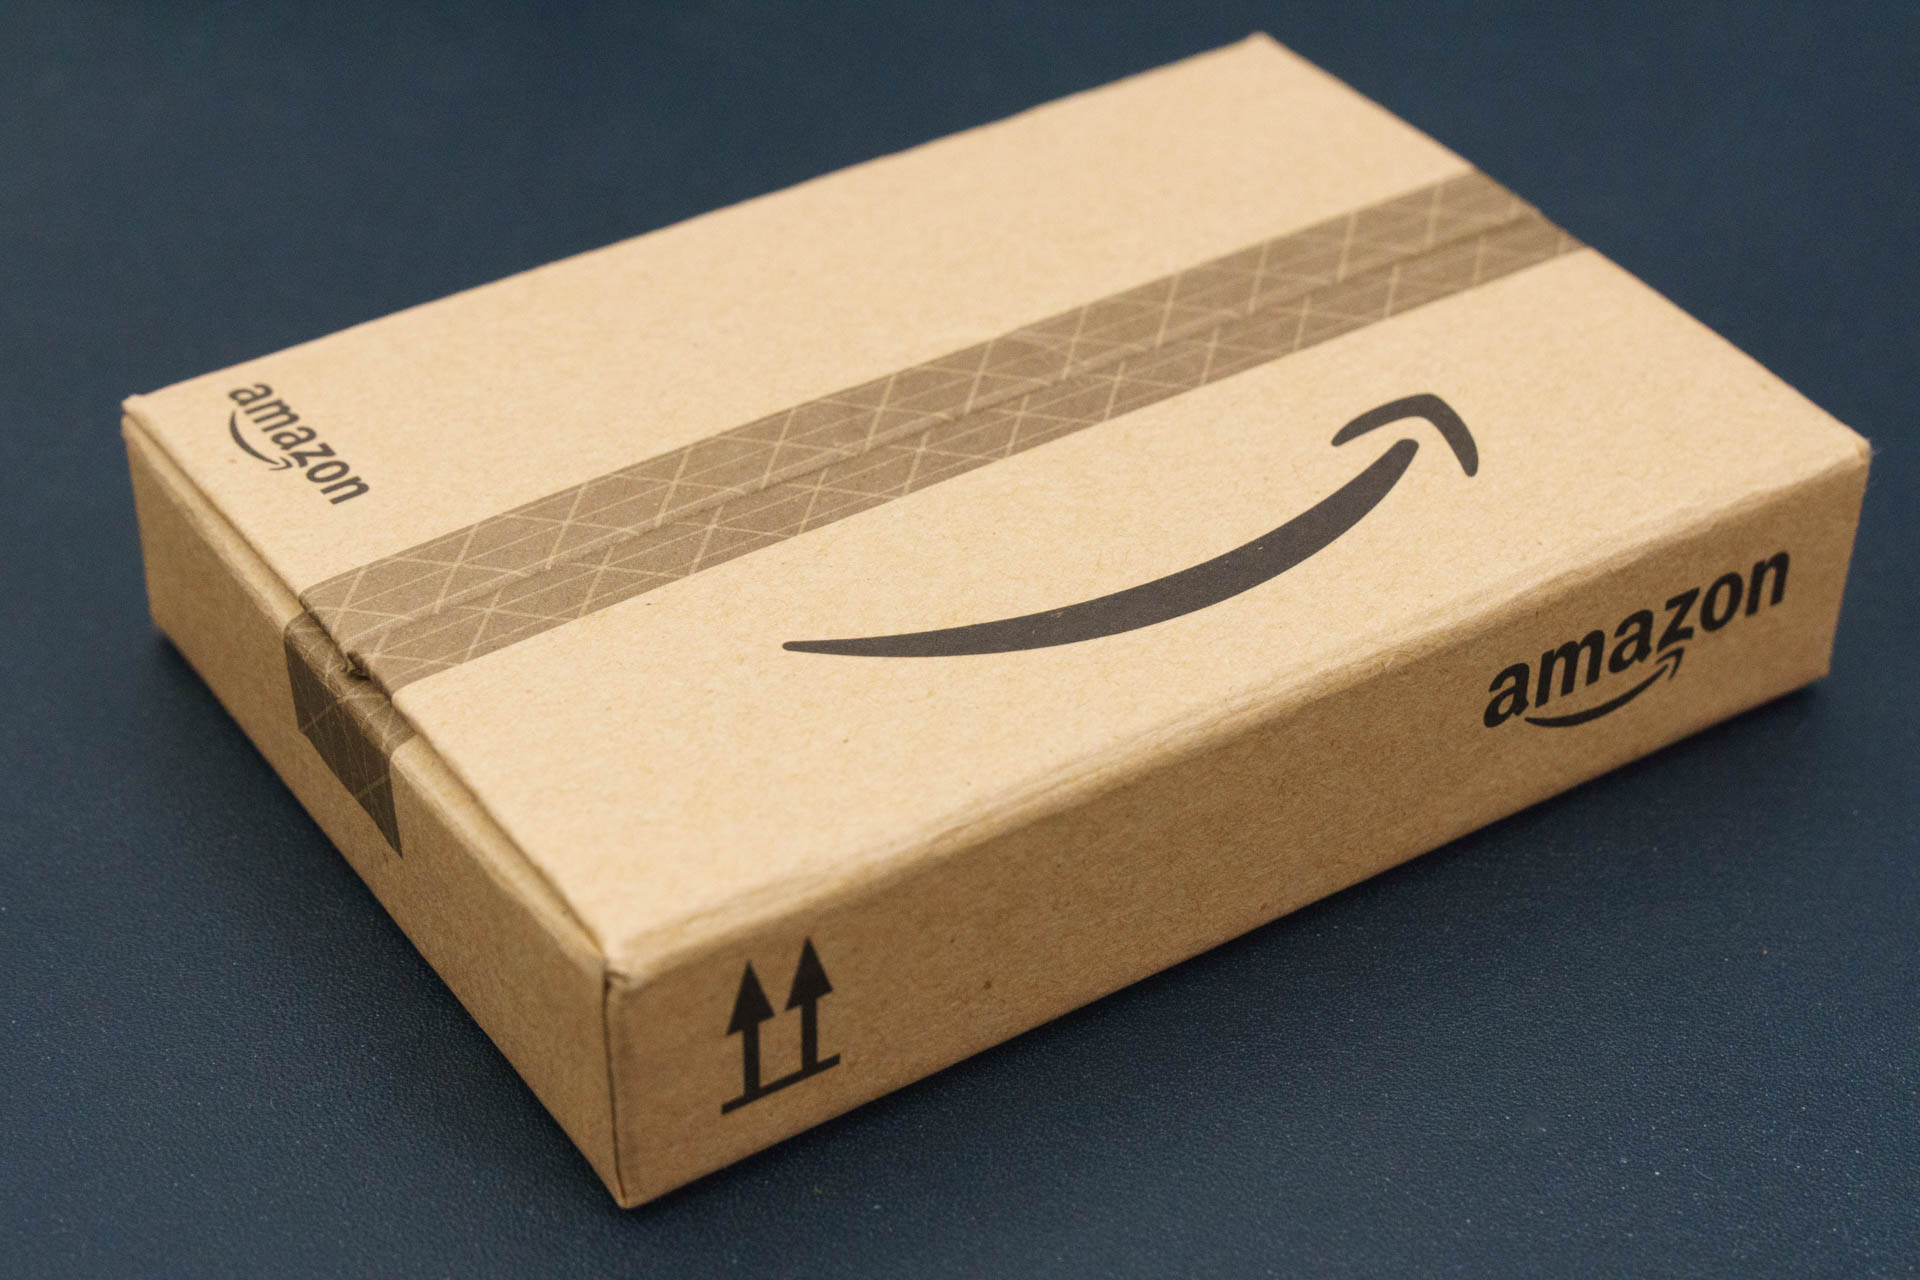 Amazonギフト券（ボックスタイプ）の包装が完成度高くて感動 : ゼンブログのASUS以外